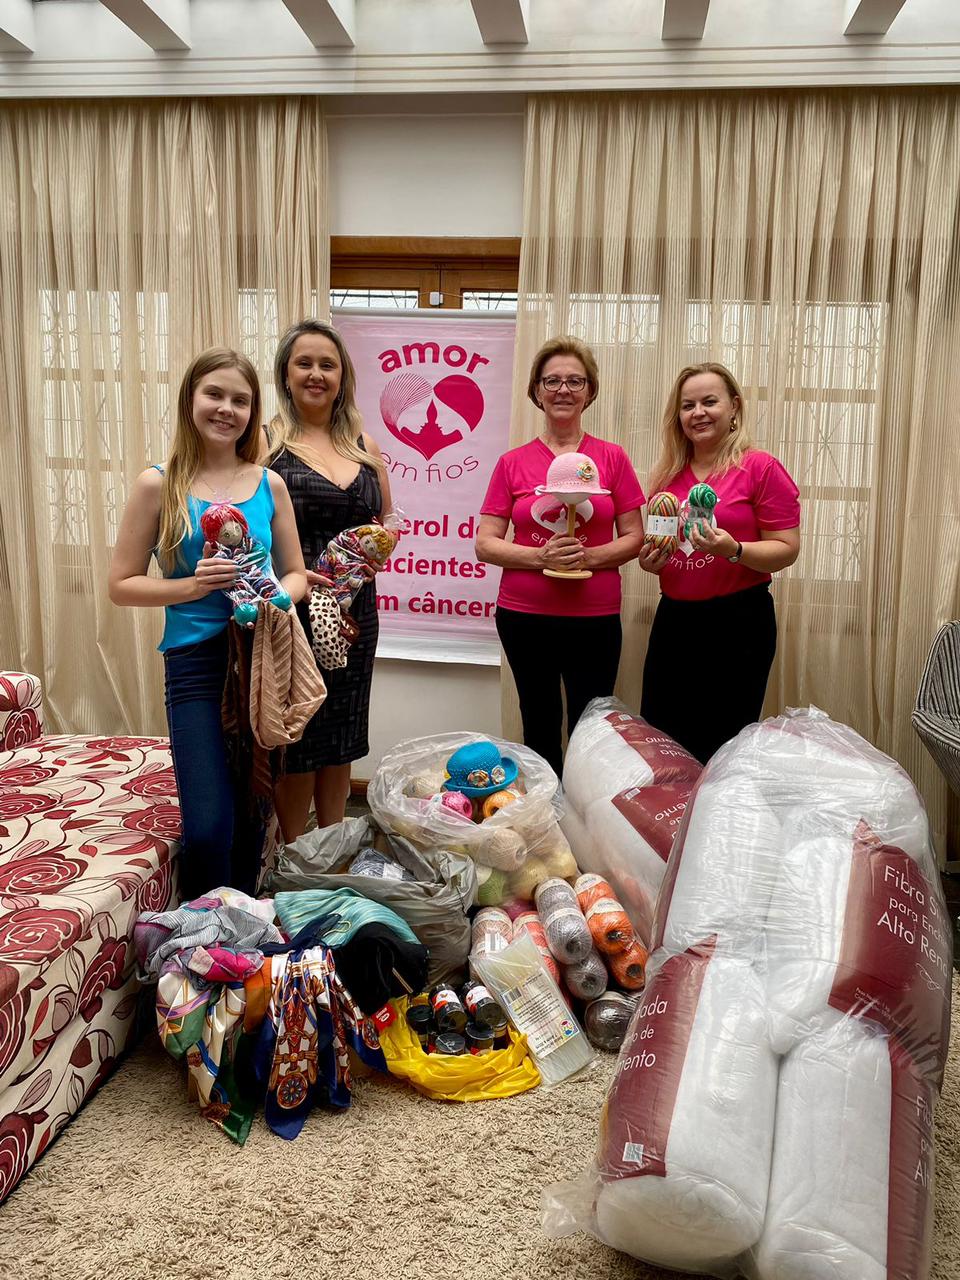 OAB Cascavel entrega donativos ao projeto Amor em Fios